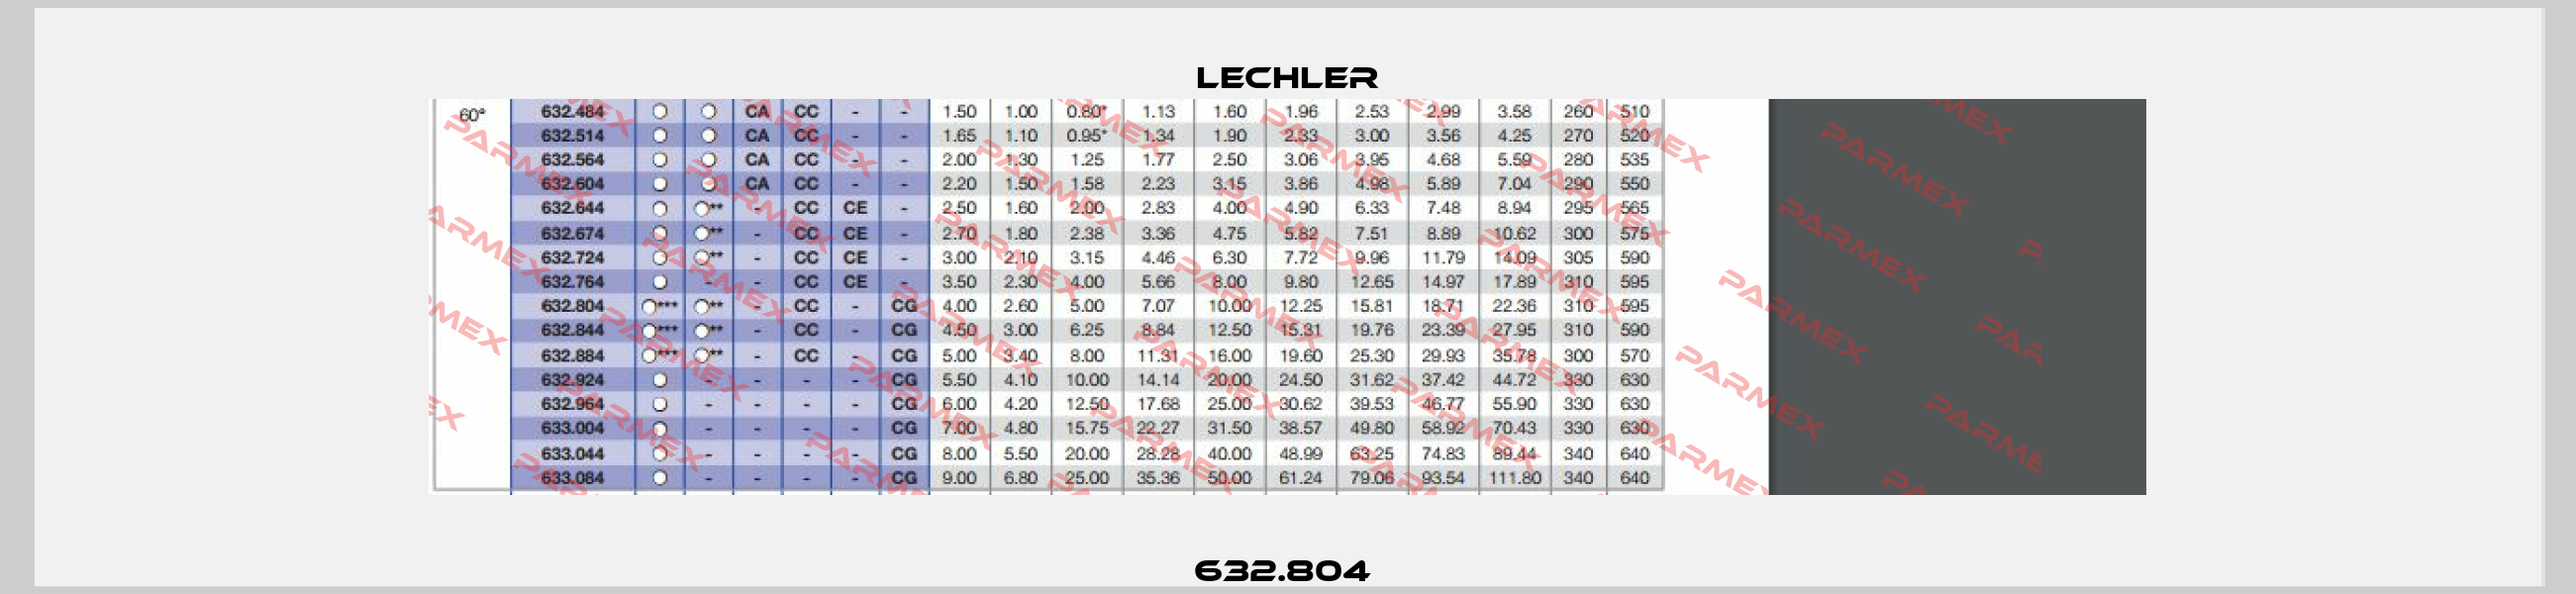 632.804  Lechler